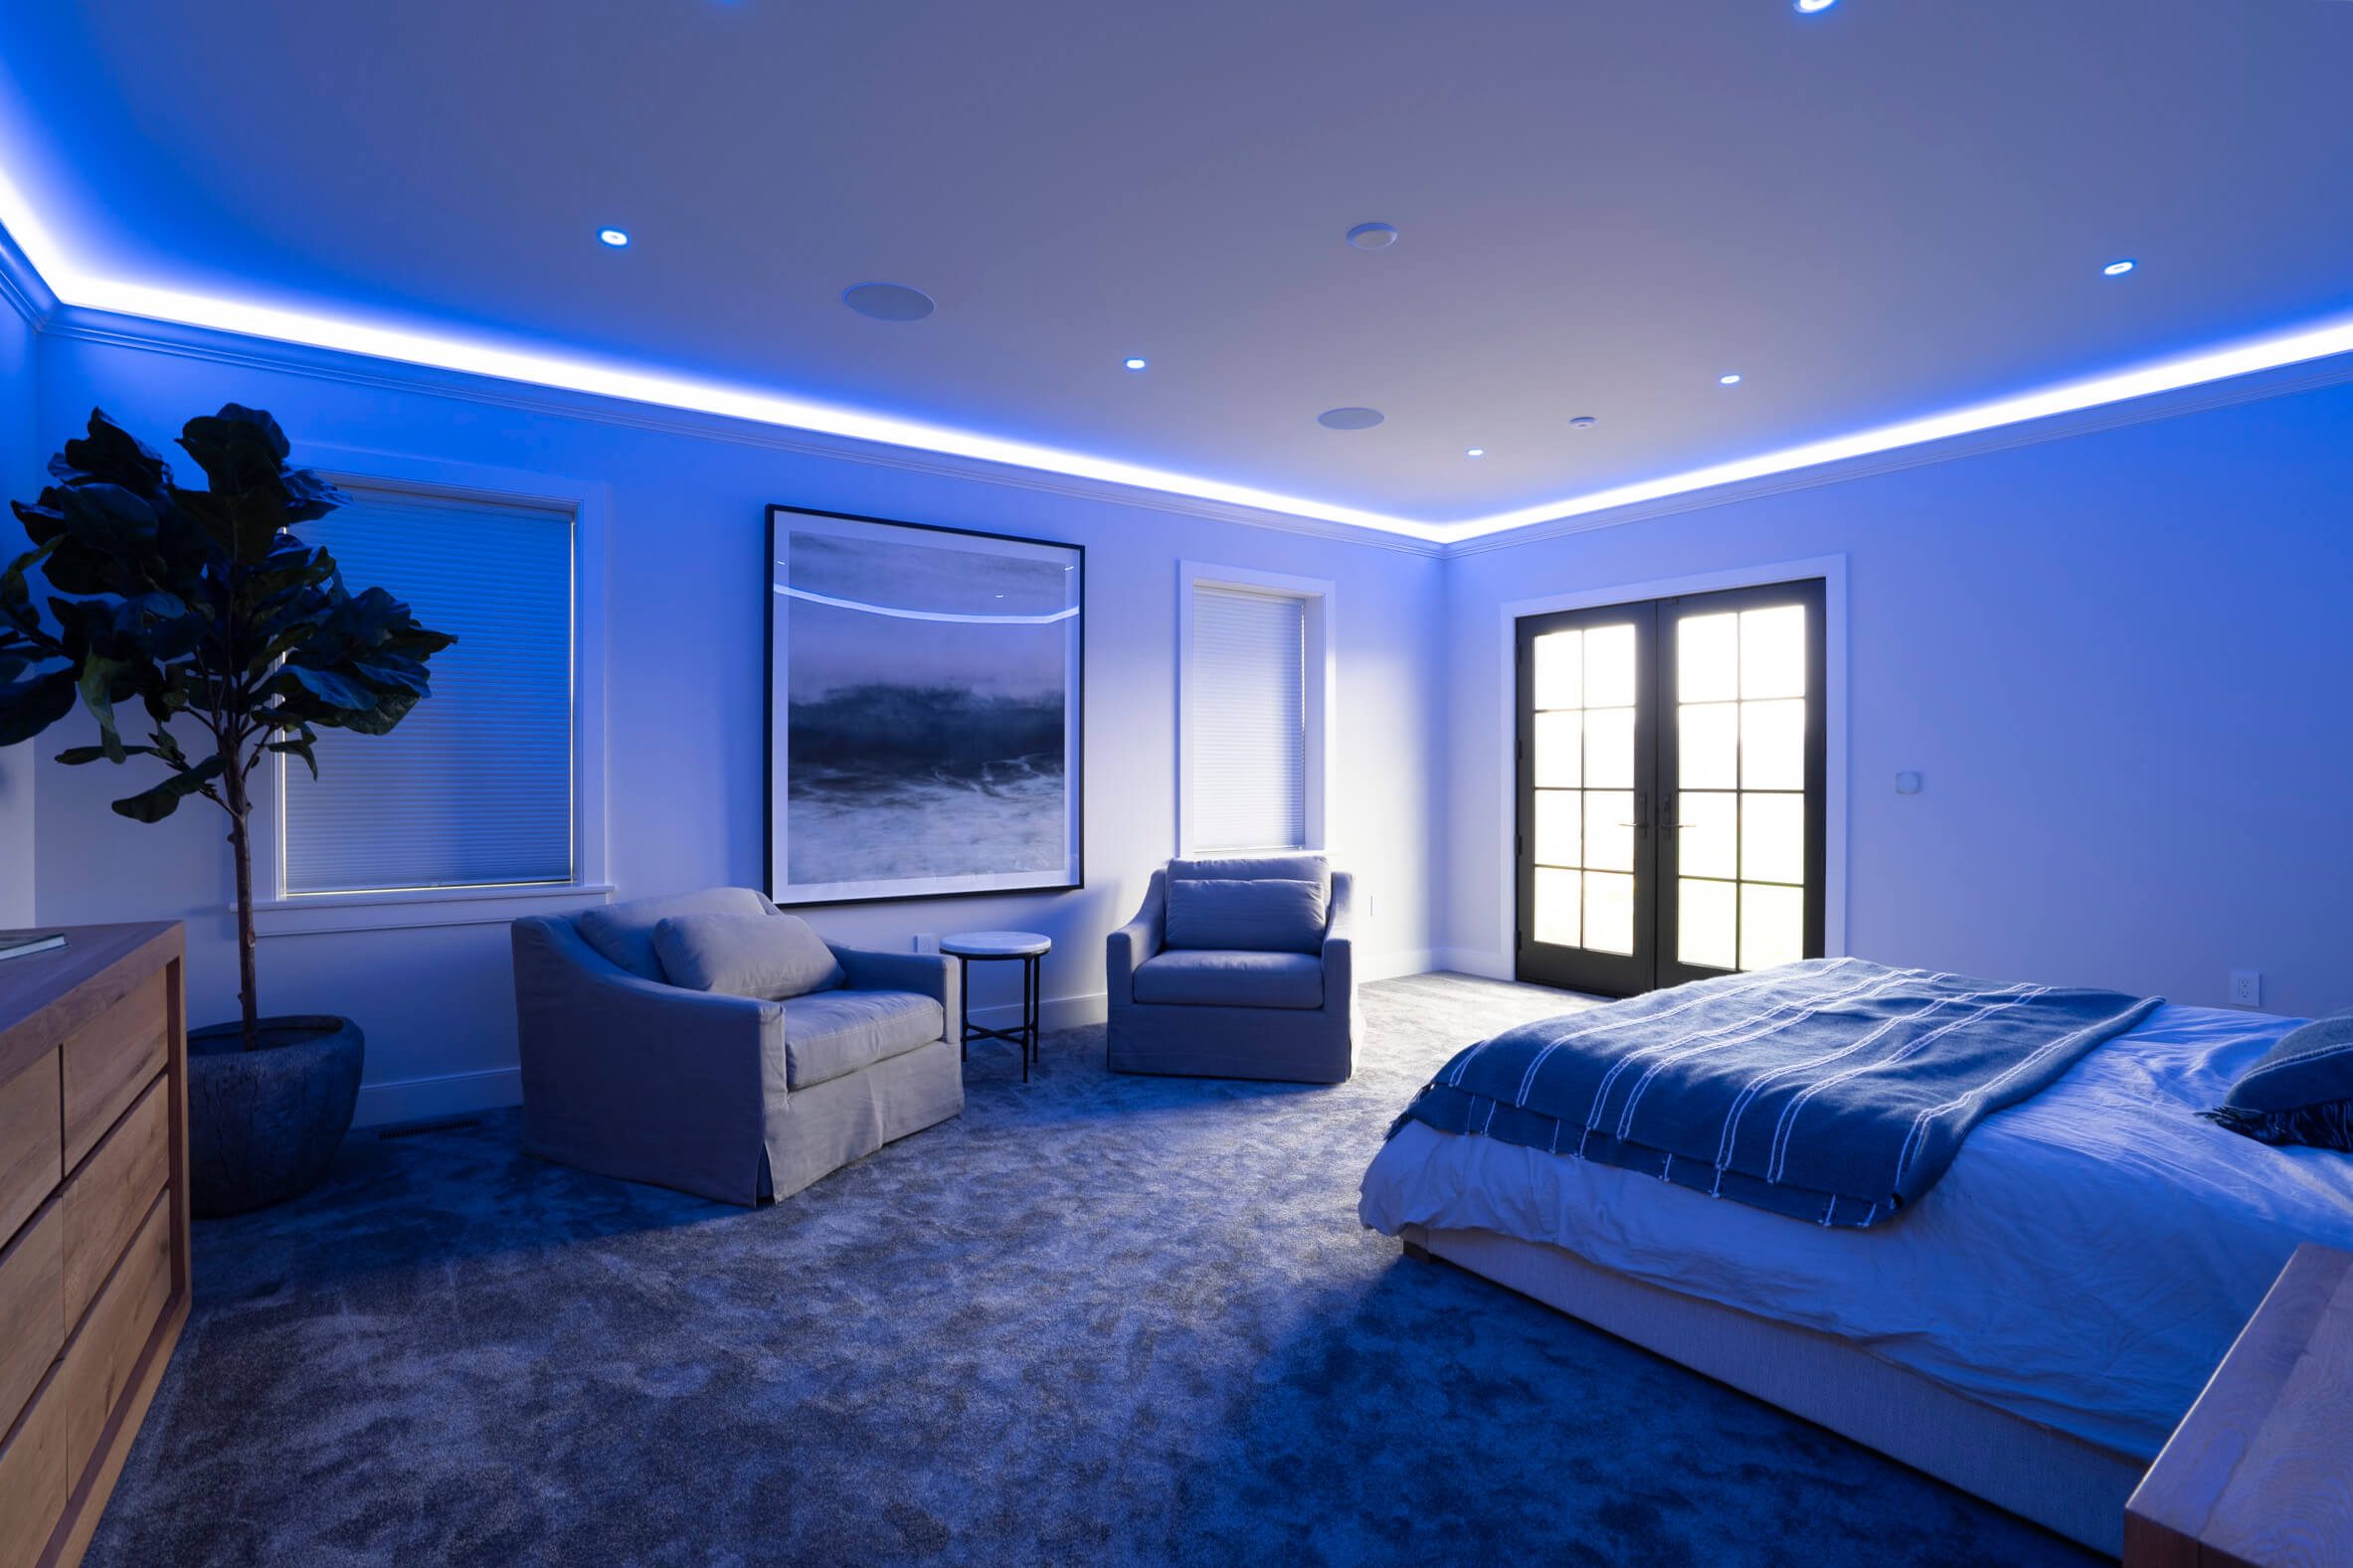 Bedroom in Night Mode